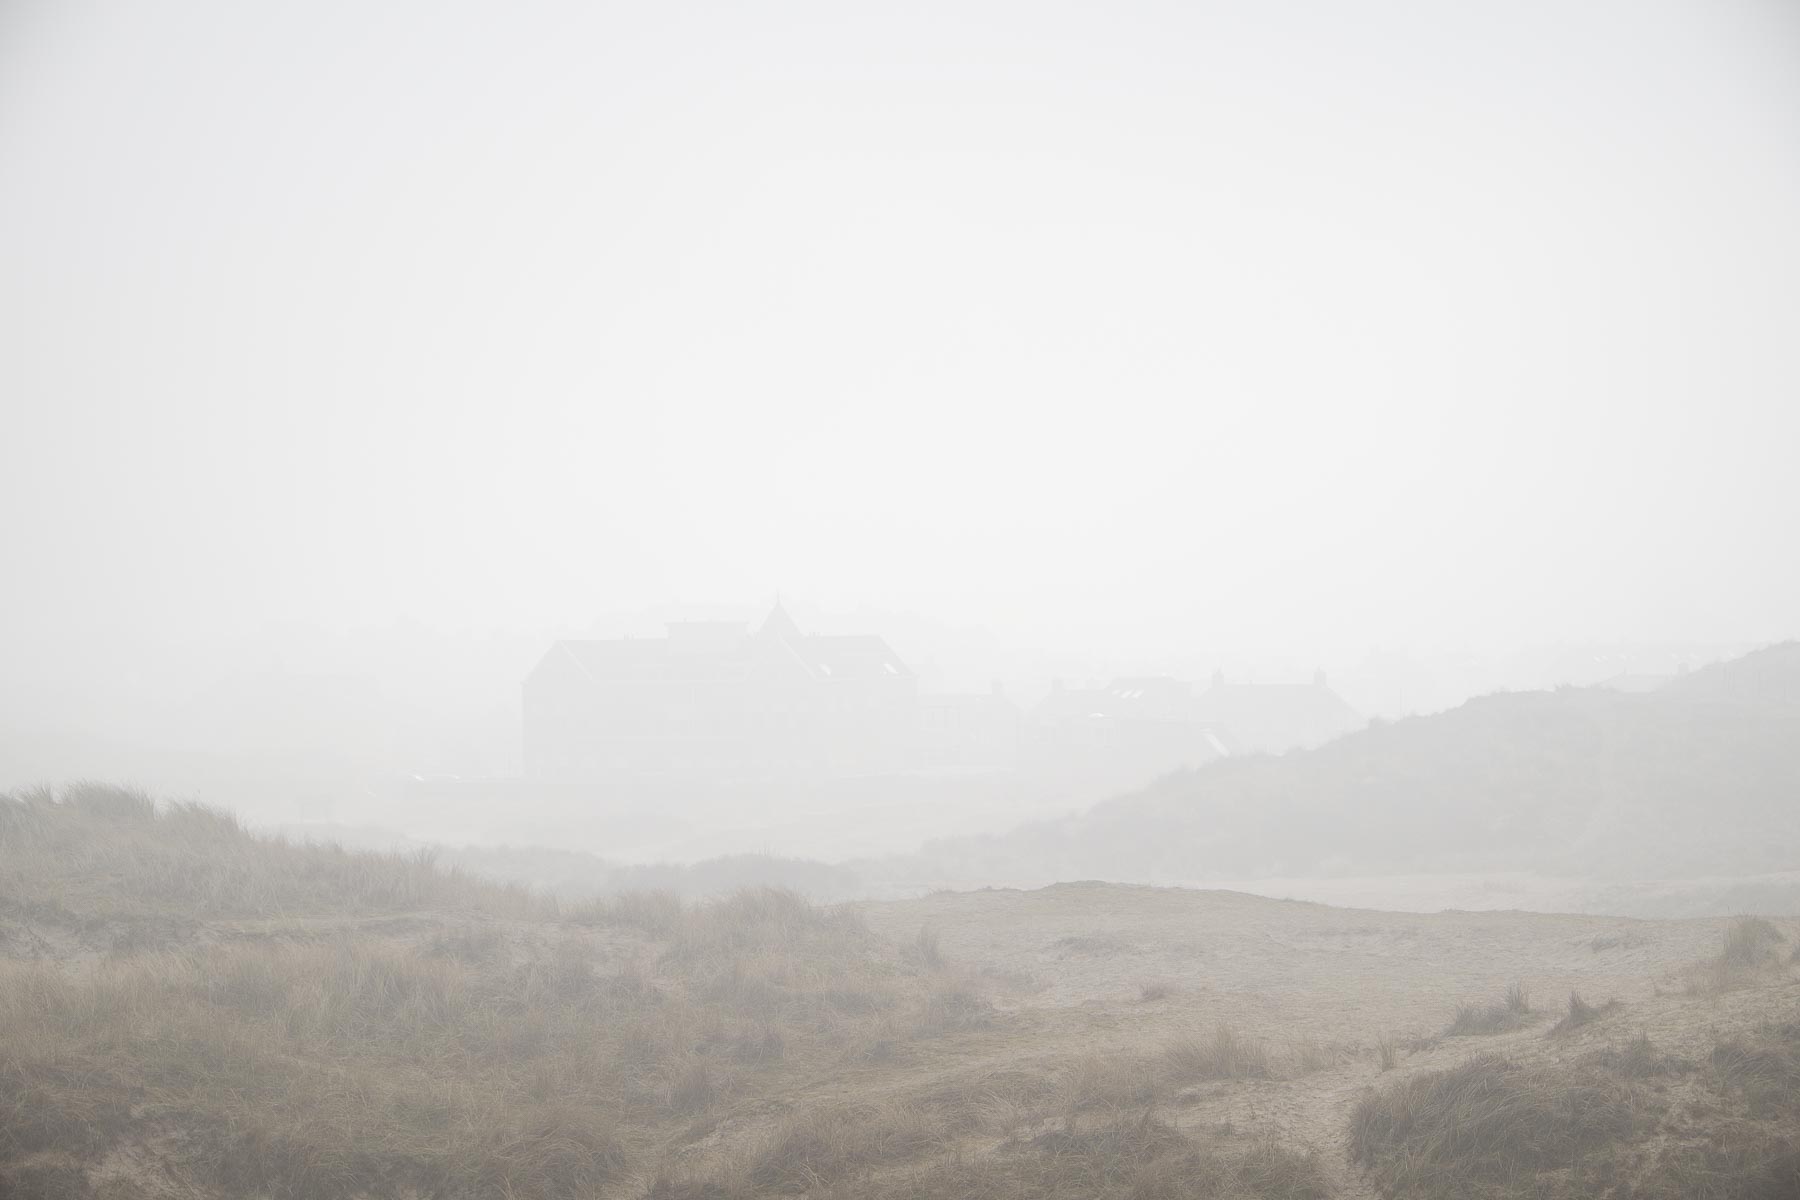 16.02.2015 - Nebel in Egmond aan Zee - Niederlande